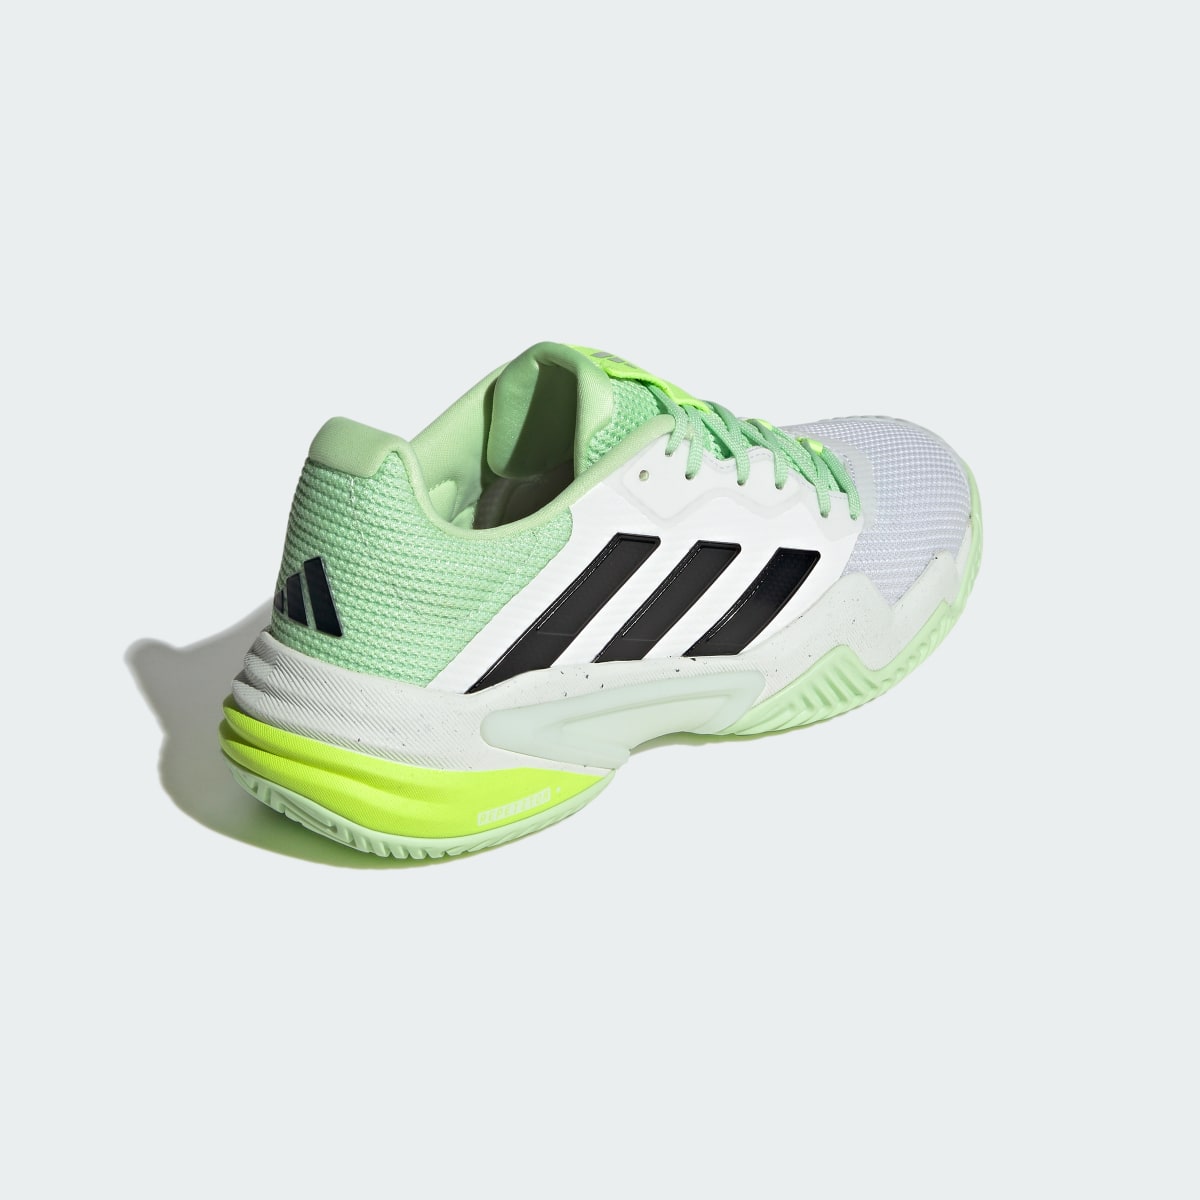 Adidas Chaussure de tennis Barricade 13. 6